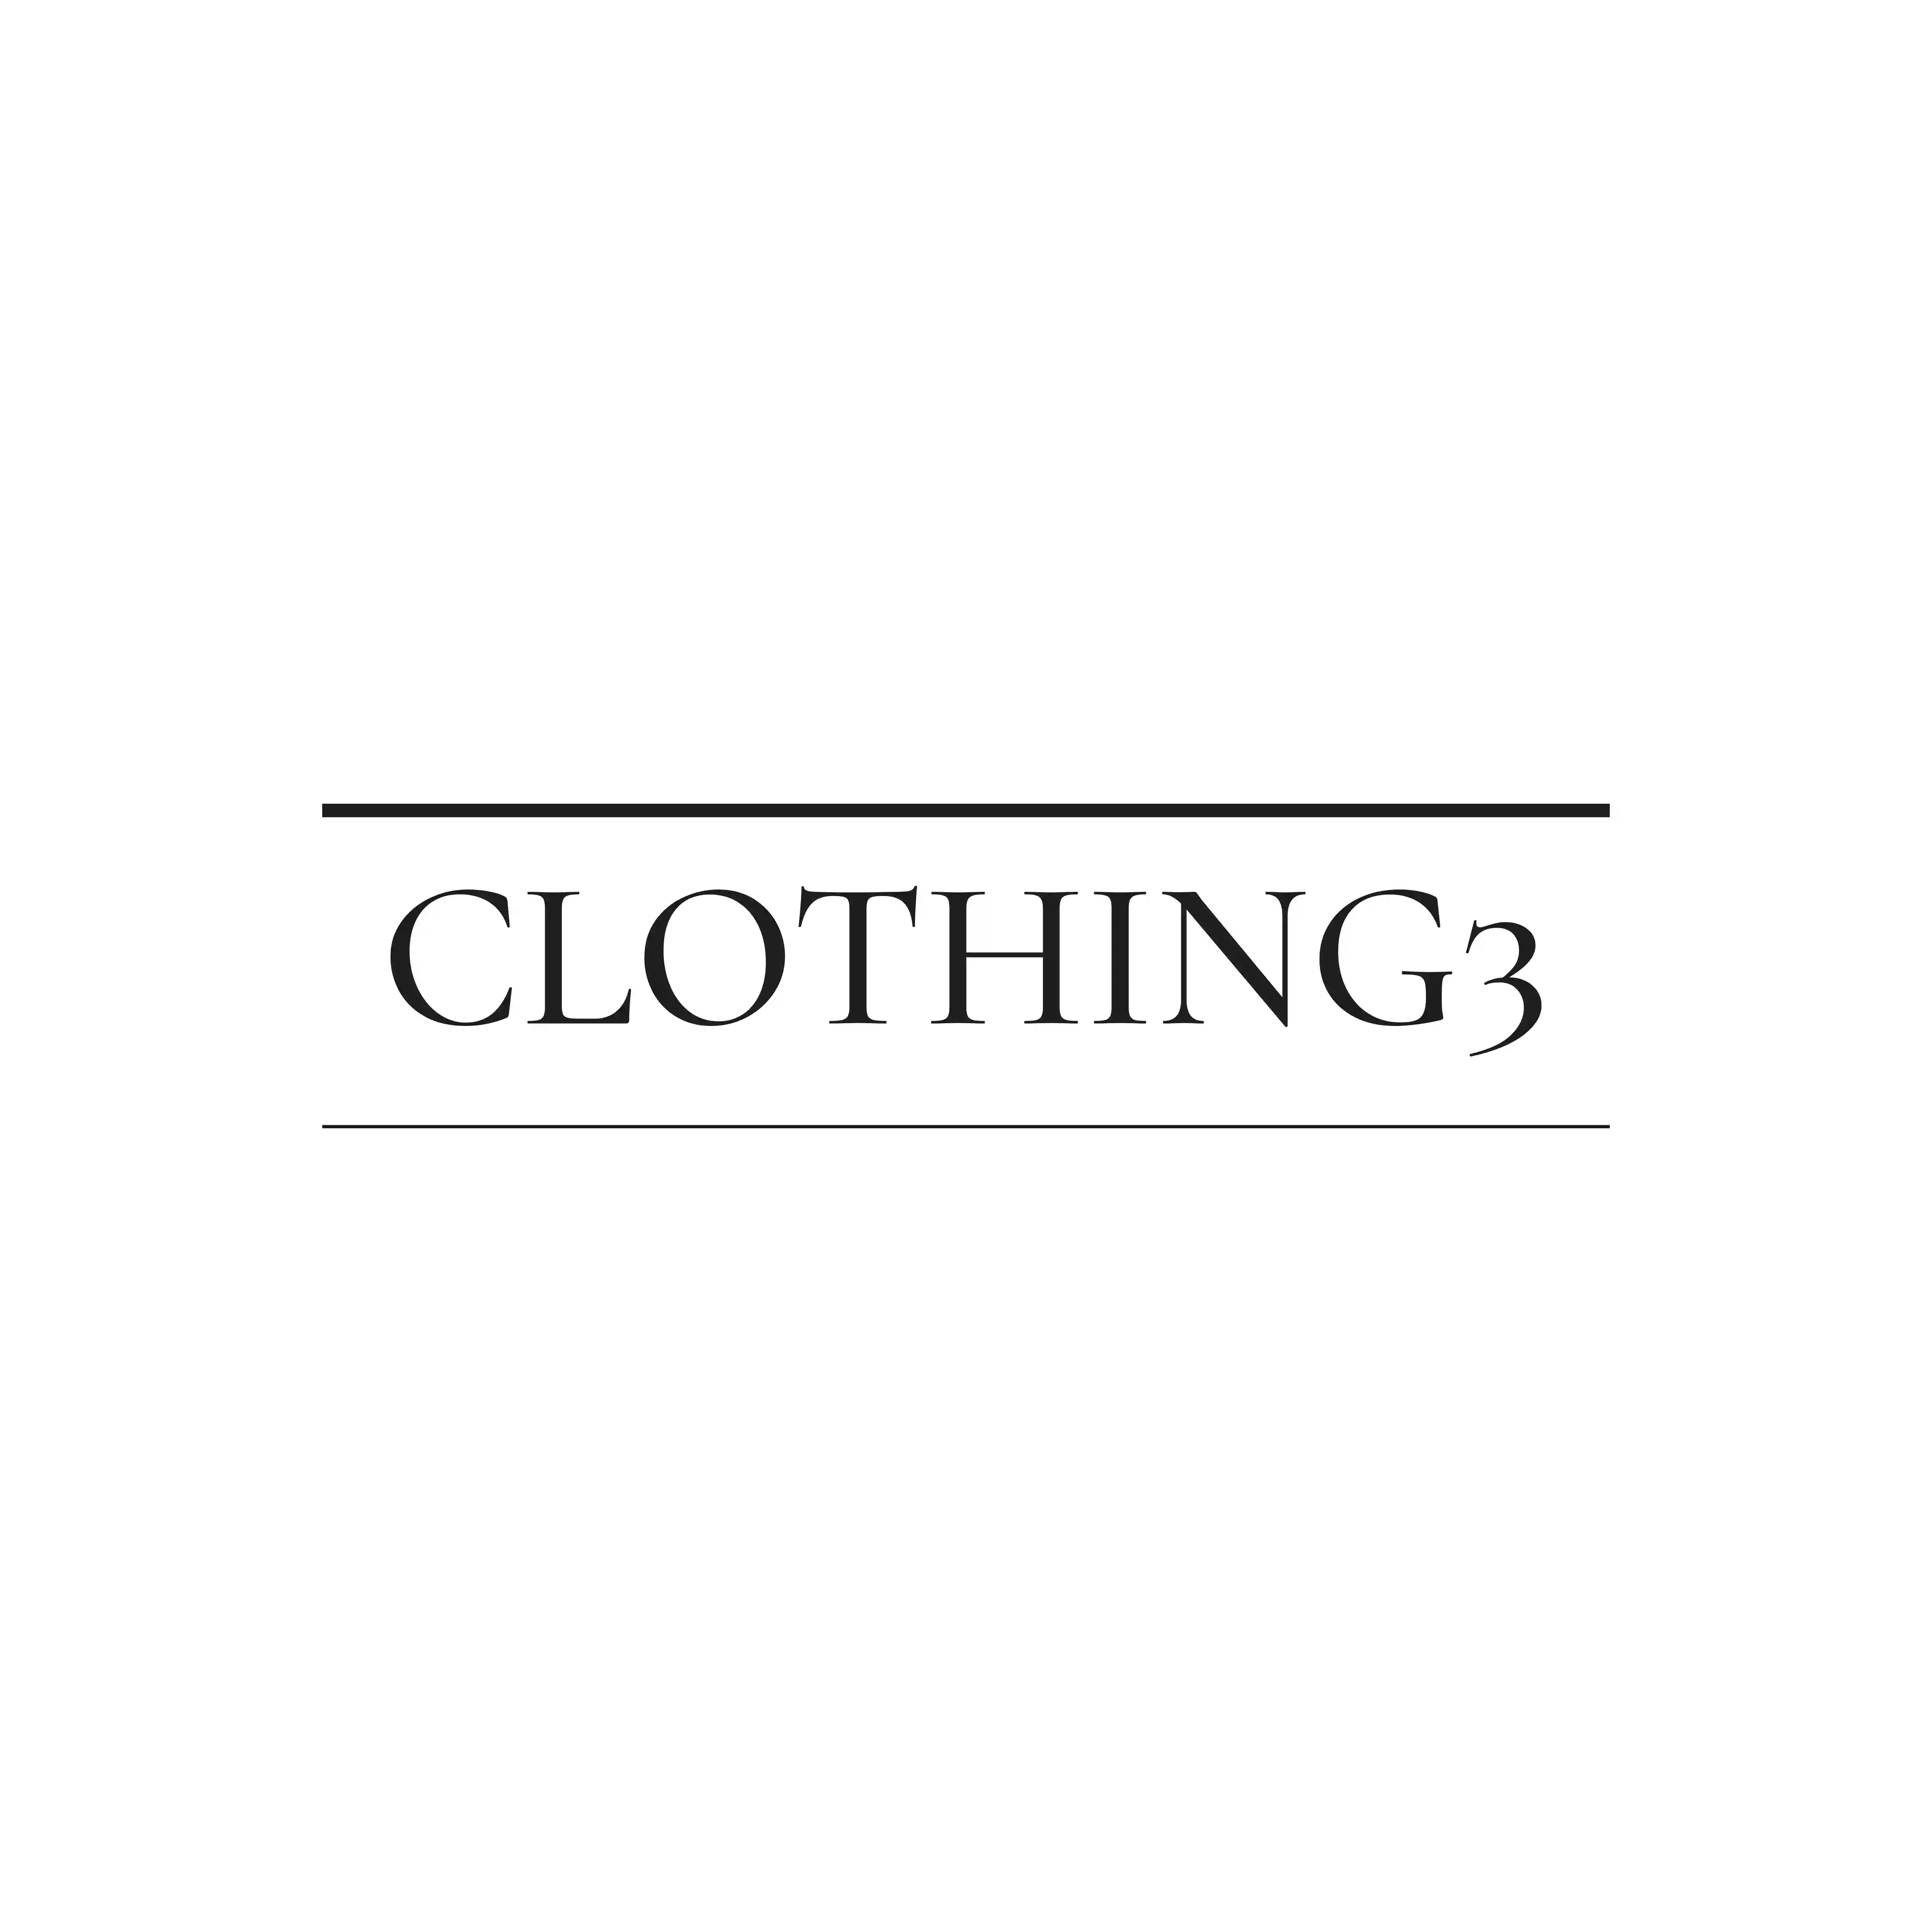 Clothing3